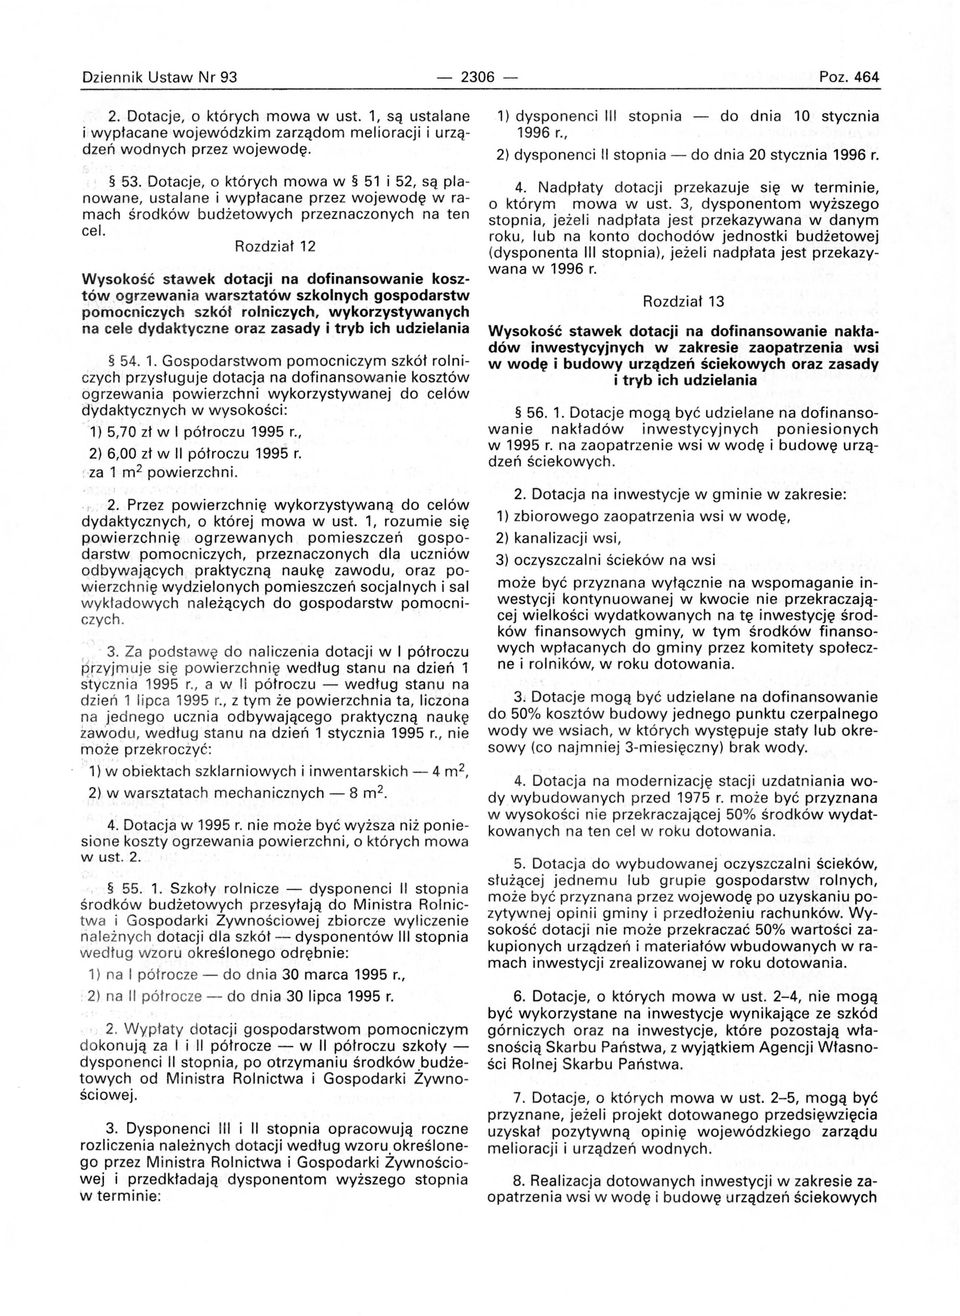 Rozdział 12 Wysokość stawek dotacji na dofinansowanie kosztów ogrzewania warsztatów szkolnych gospodarstw pomocniczych szkół rolniczych, wykorzystywanych na cele dydakt yczne oraz zasady i tryb ich